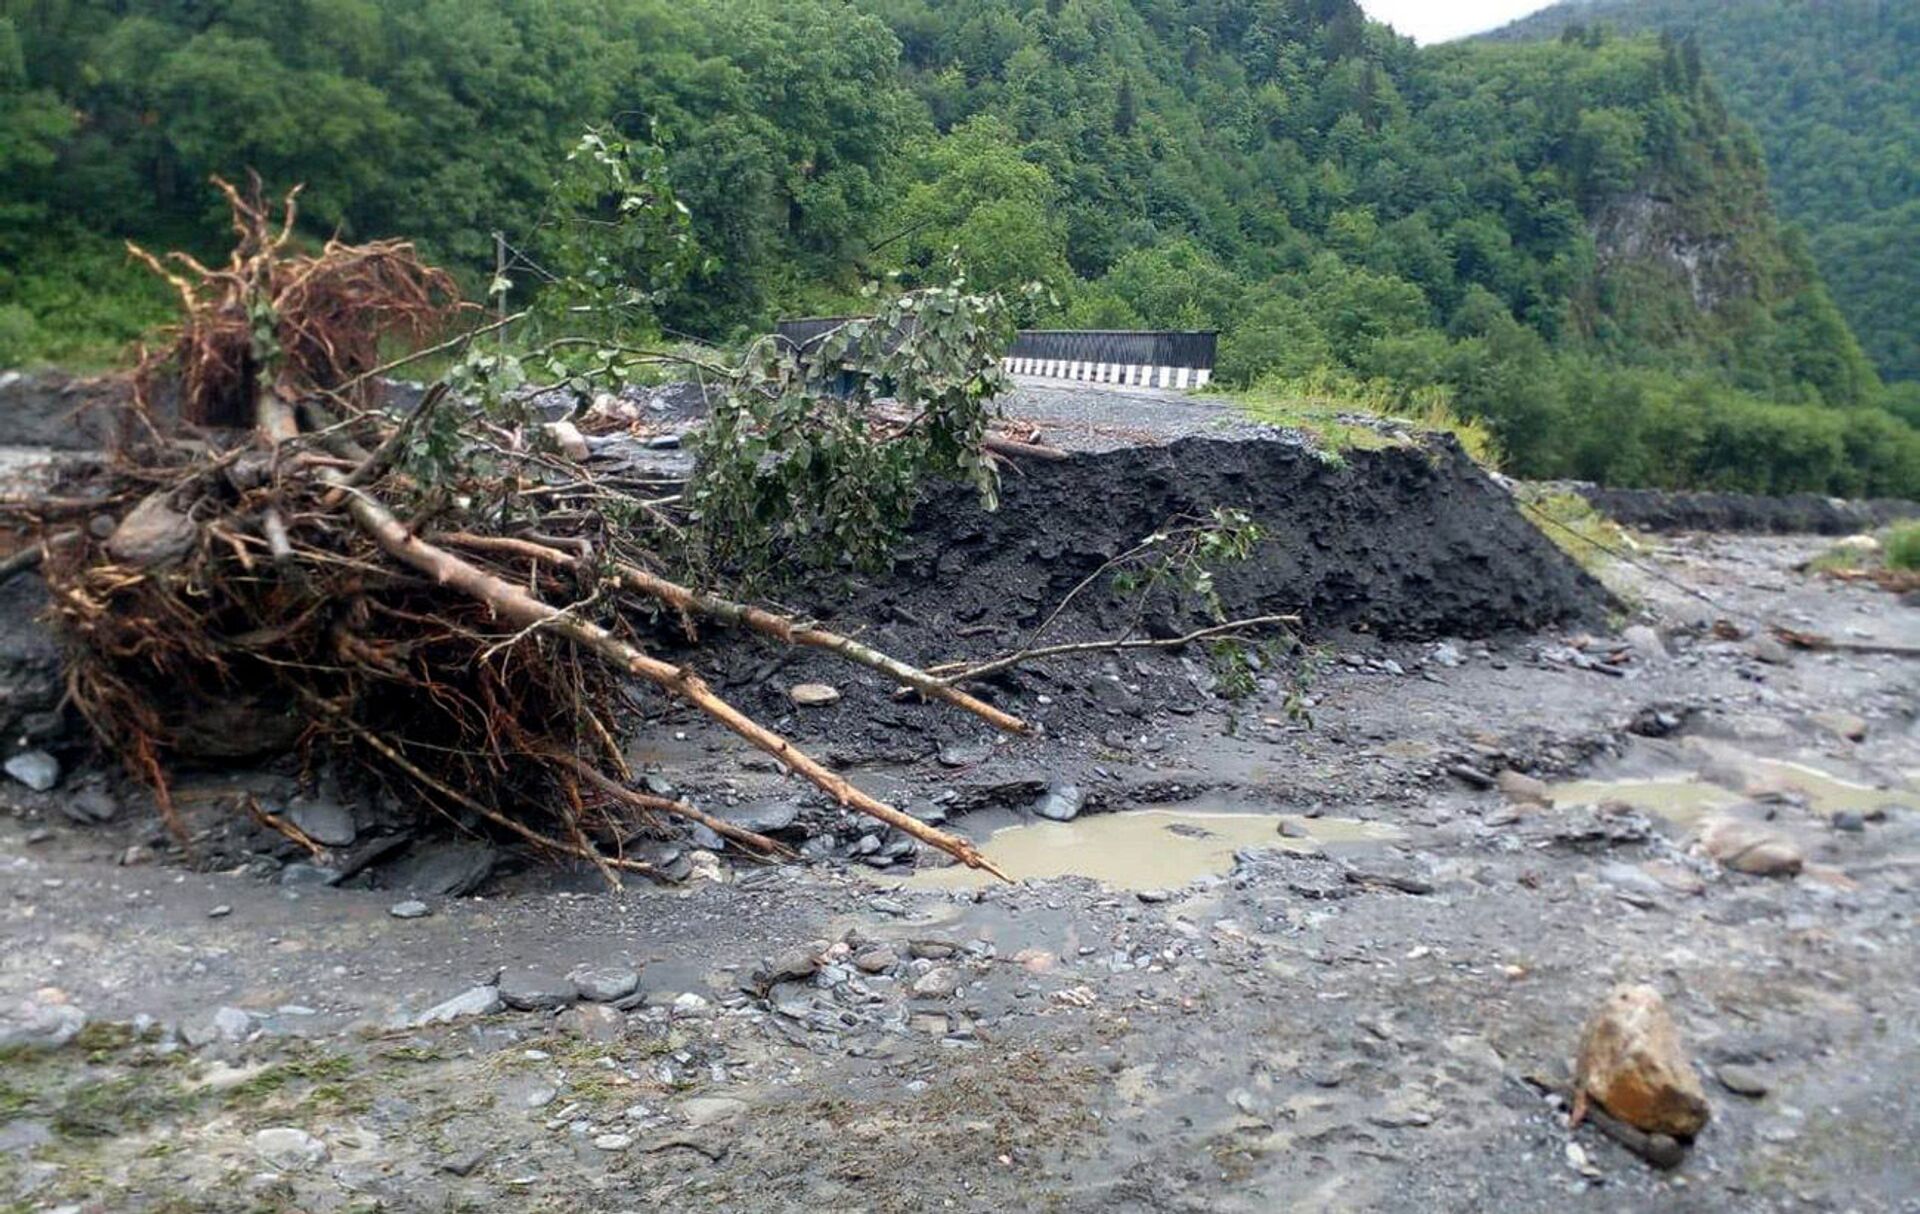 Последствия наводнения после ливневых дождей в Западной Грузии - разрушенные дороги и инфраструктура - Sputnik Грузия, 1920, 24.08.2021